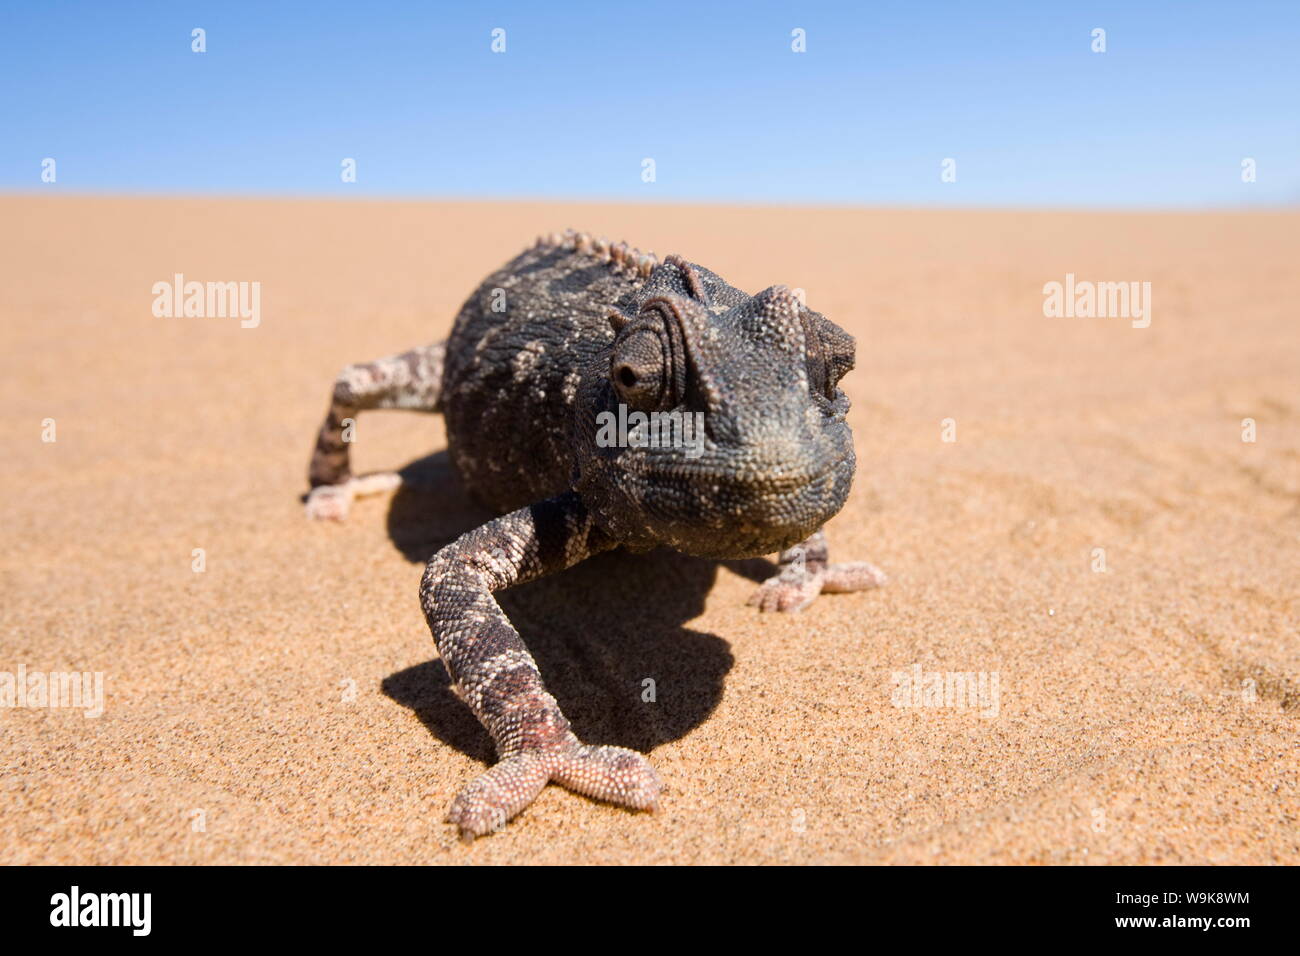 Namaqua chameleon (Chamaeleo namaquensis), Namibia, Africa Stock Photo